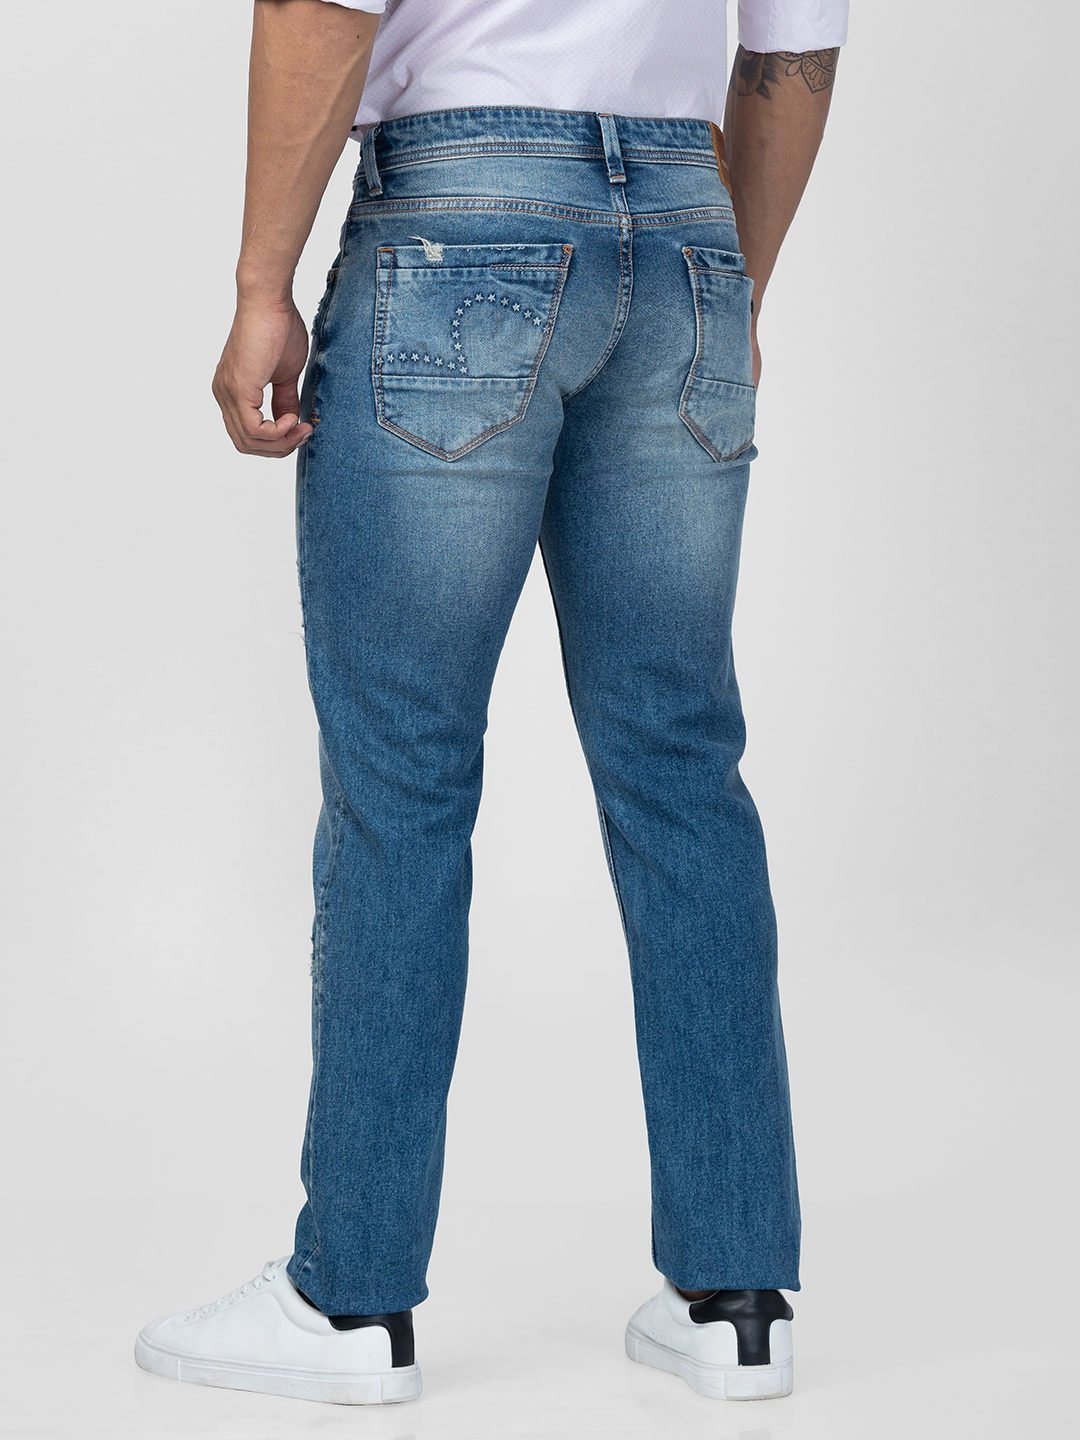 spykar | Men's Blue Cotton Jeans 2